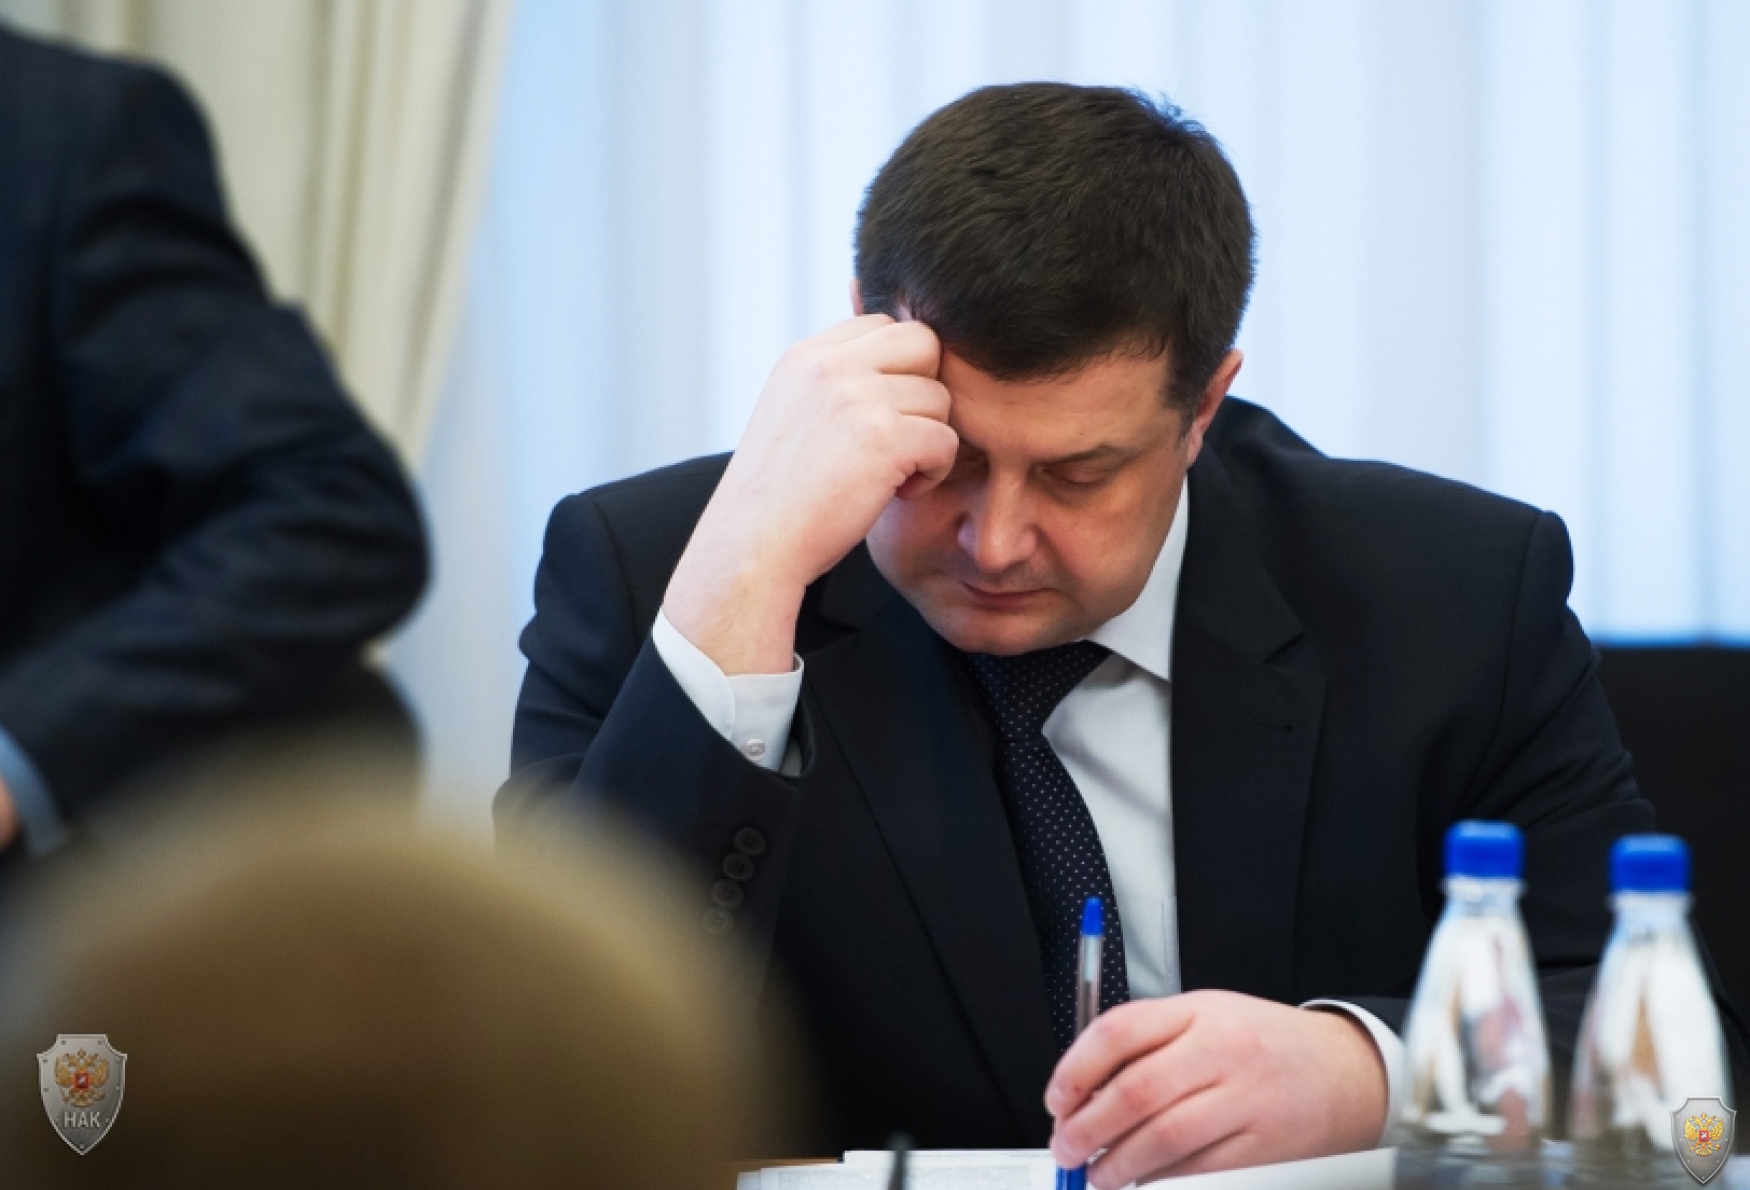 Игорь Руденя провёл заседание антитеррористической комиссии 